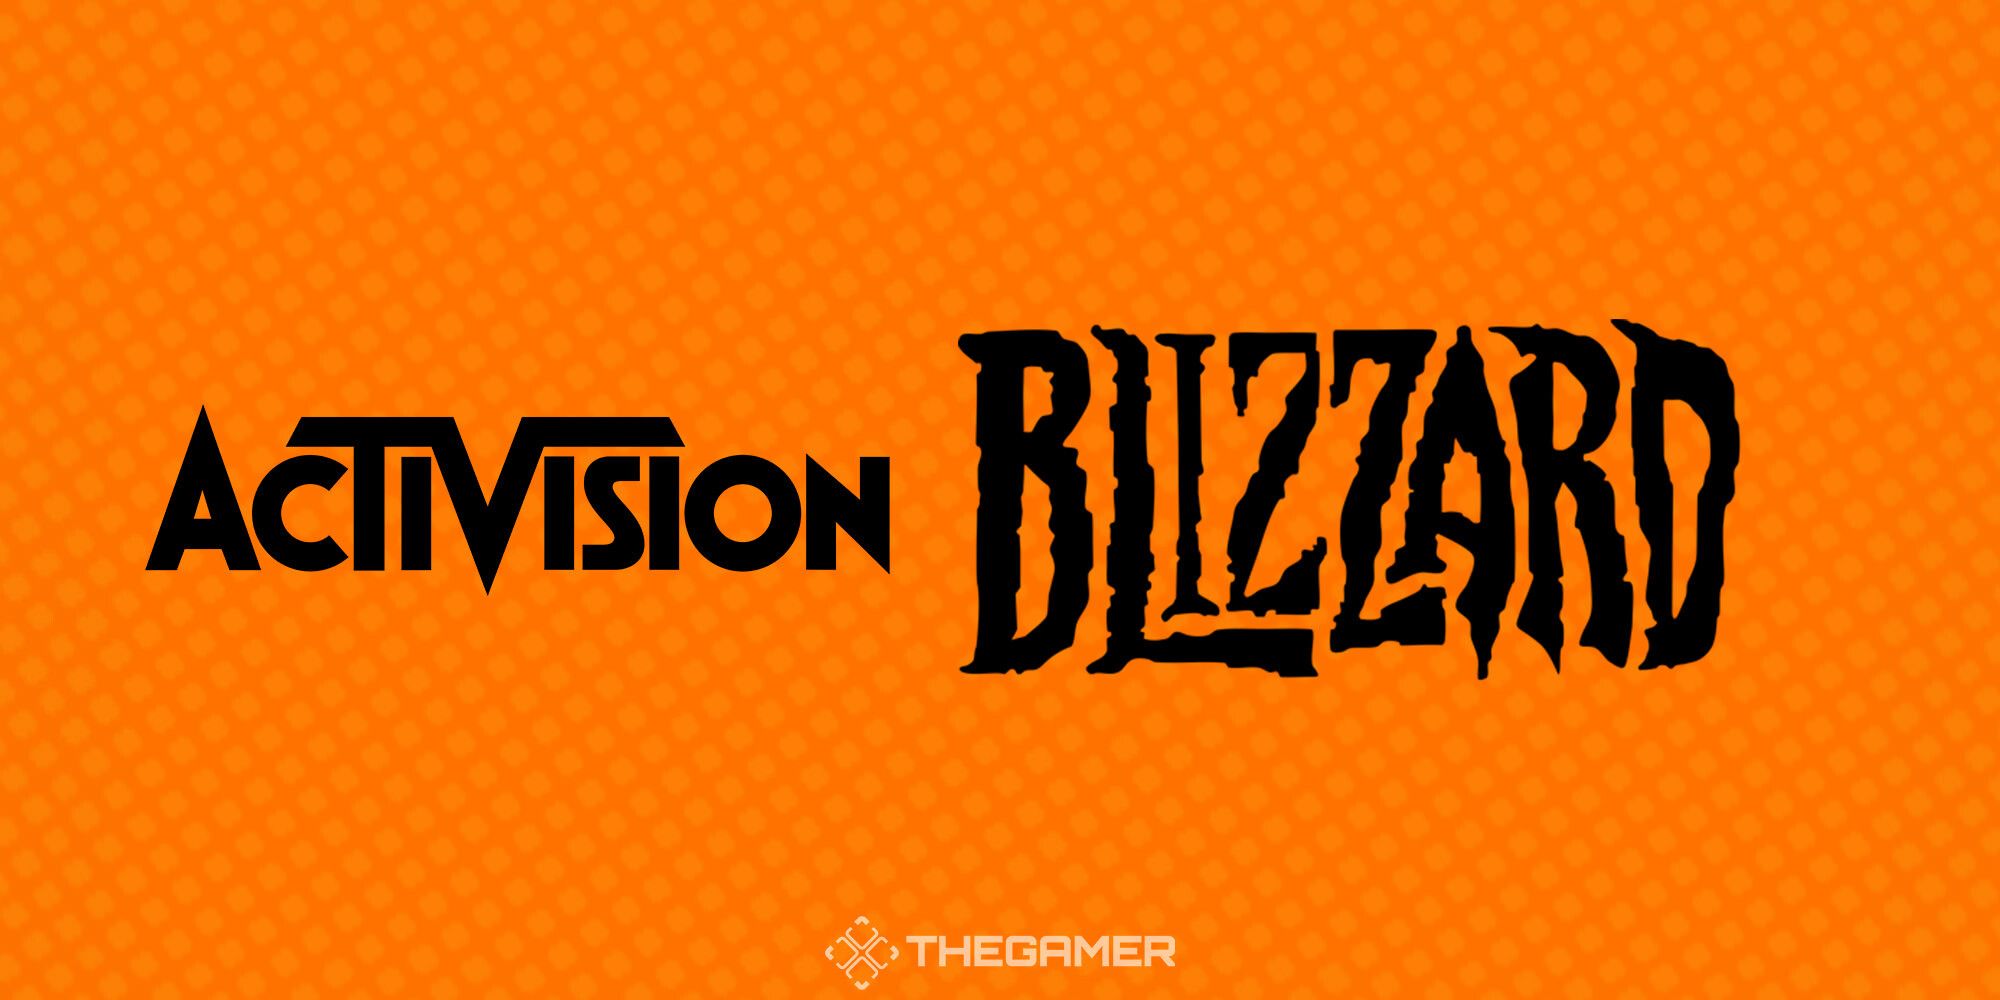 Als de rechtszaak tegen Activision Blizzard je schokt, heb je niet opgelet